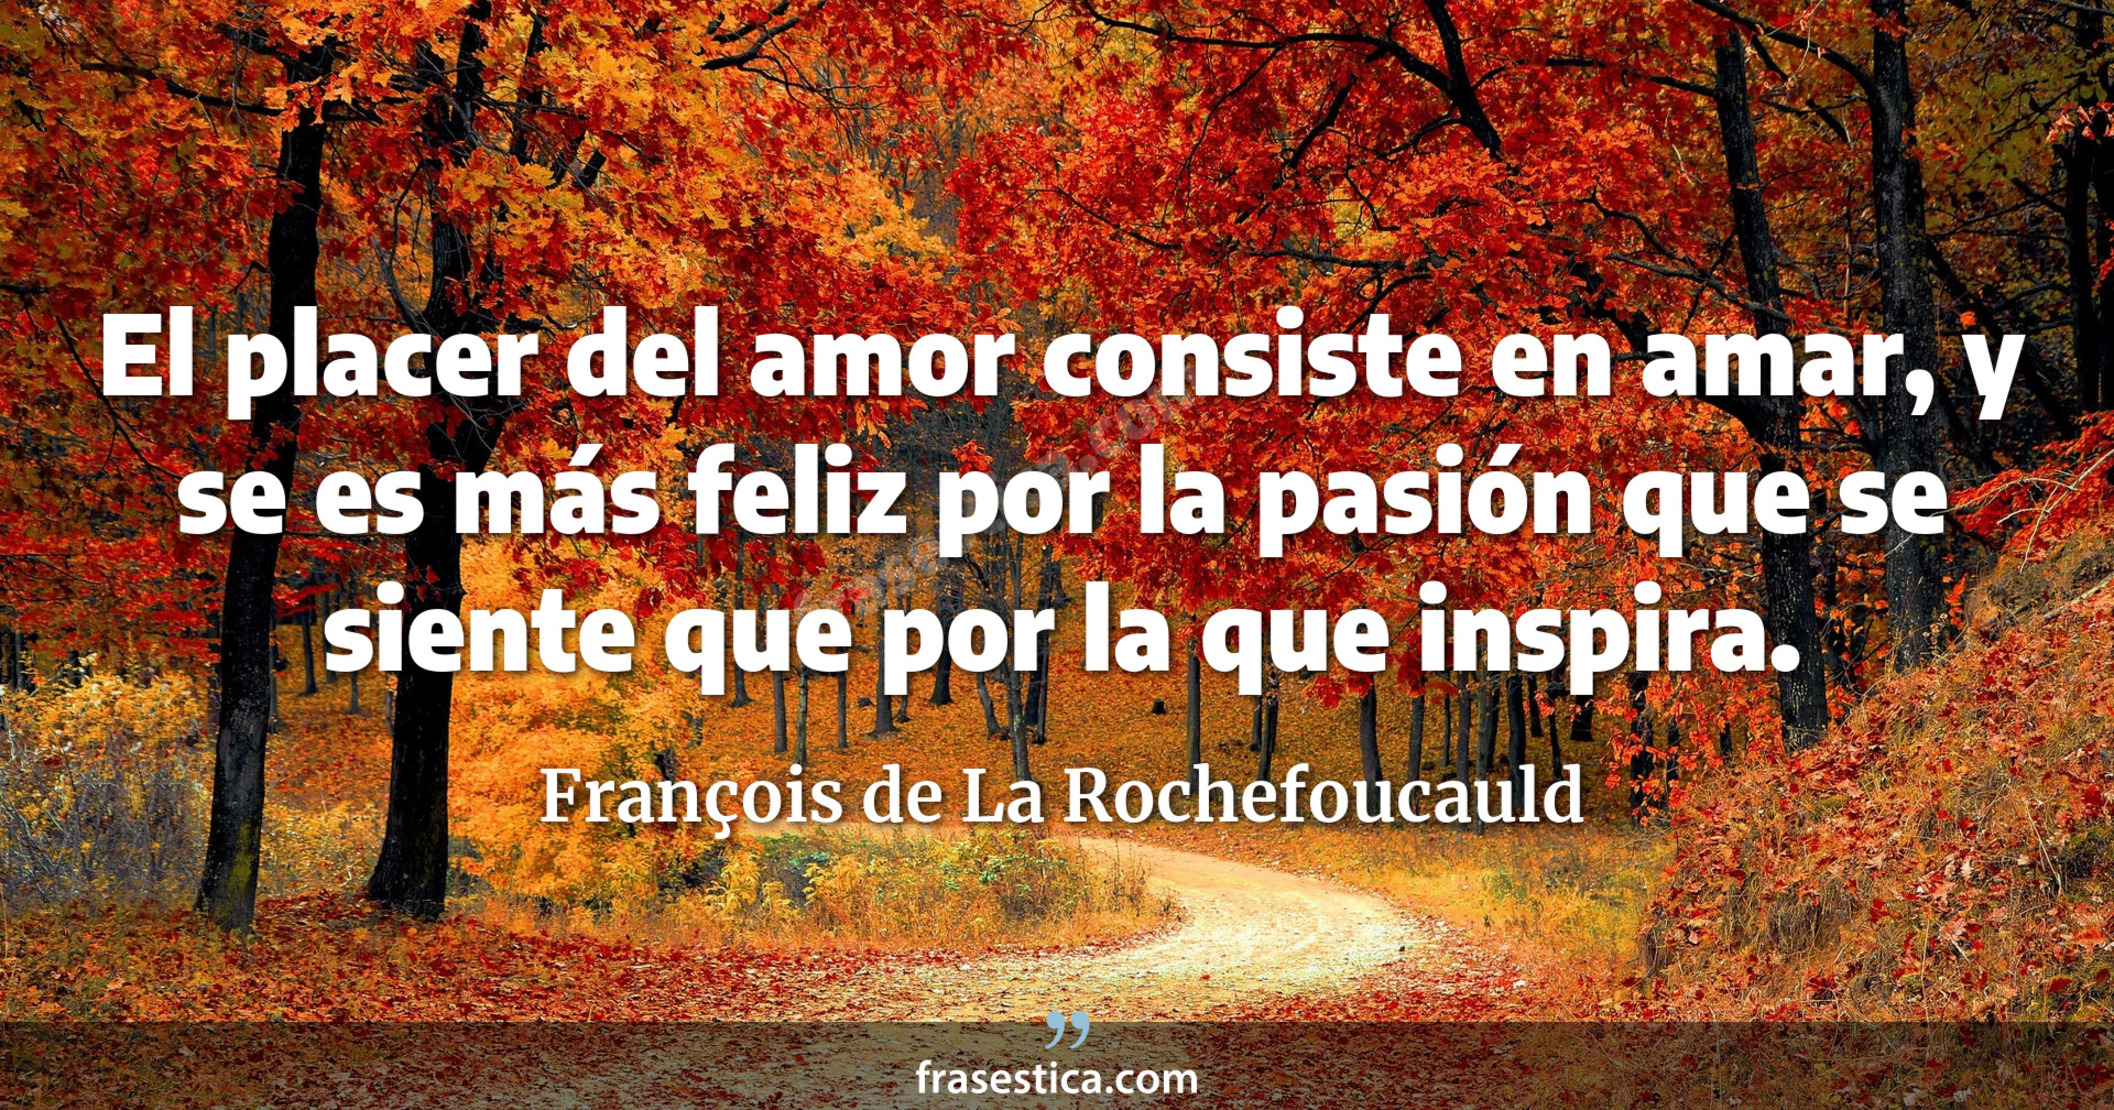 El placer del amor consiste en amar, y se es más feliz por la pasión que se siente que por la que inspira. - François de La Rochefoucauld